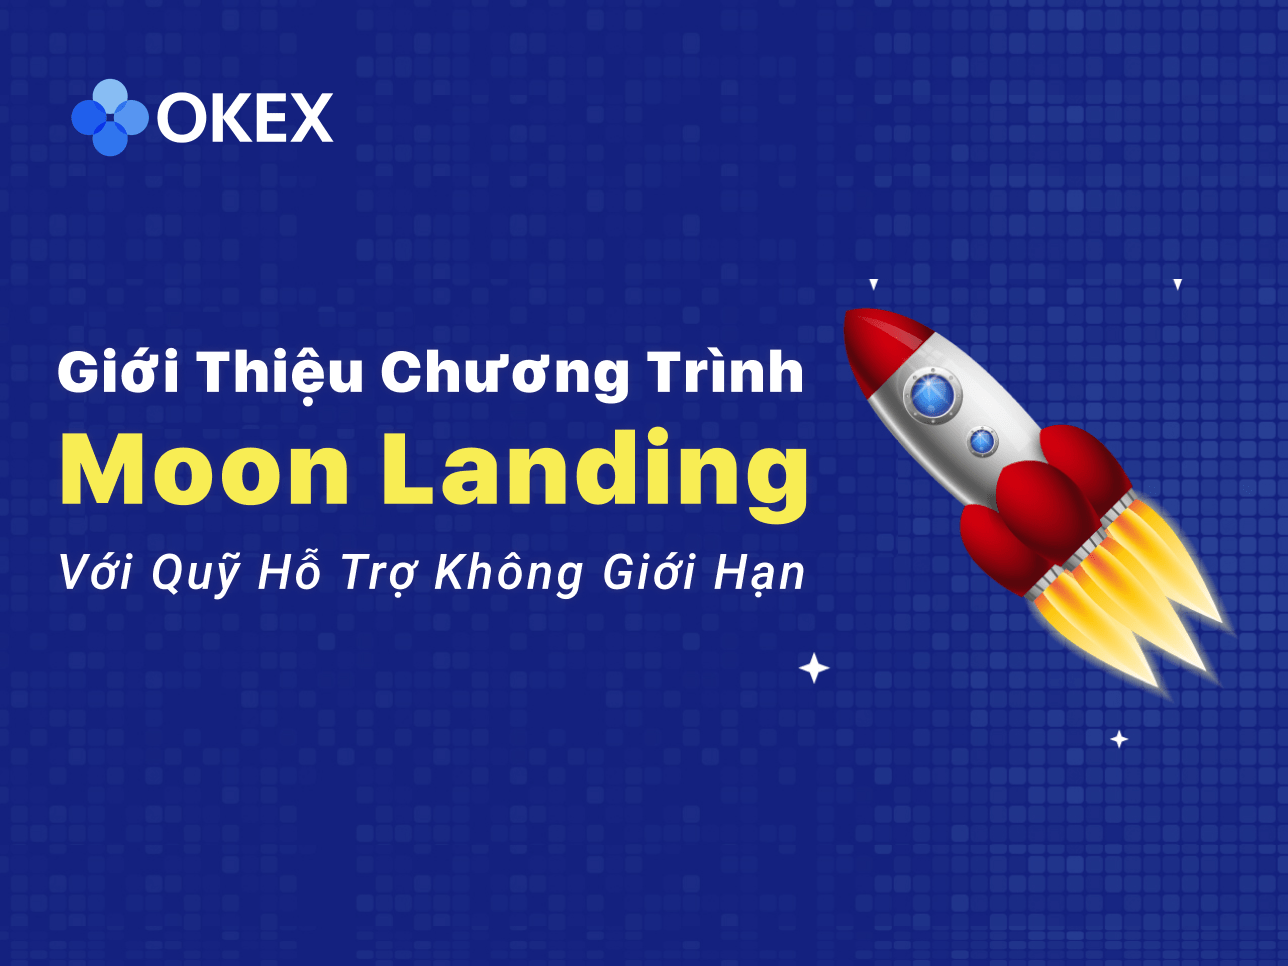 Η OKEx ανακοινώνει το «Πρόγραμμα Προσγείωσης σε Σελήνη» για την αγορά της Ασίας